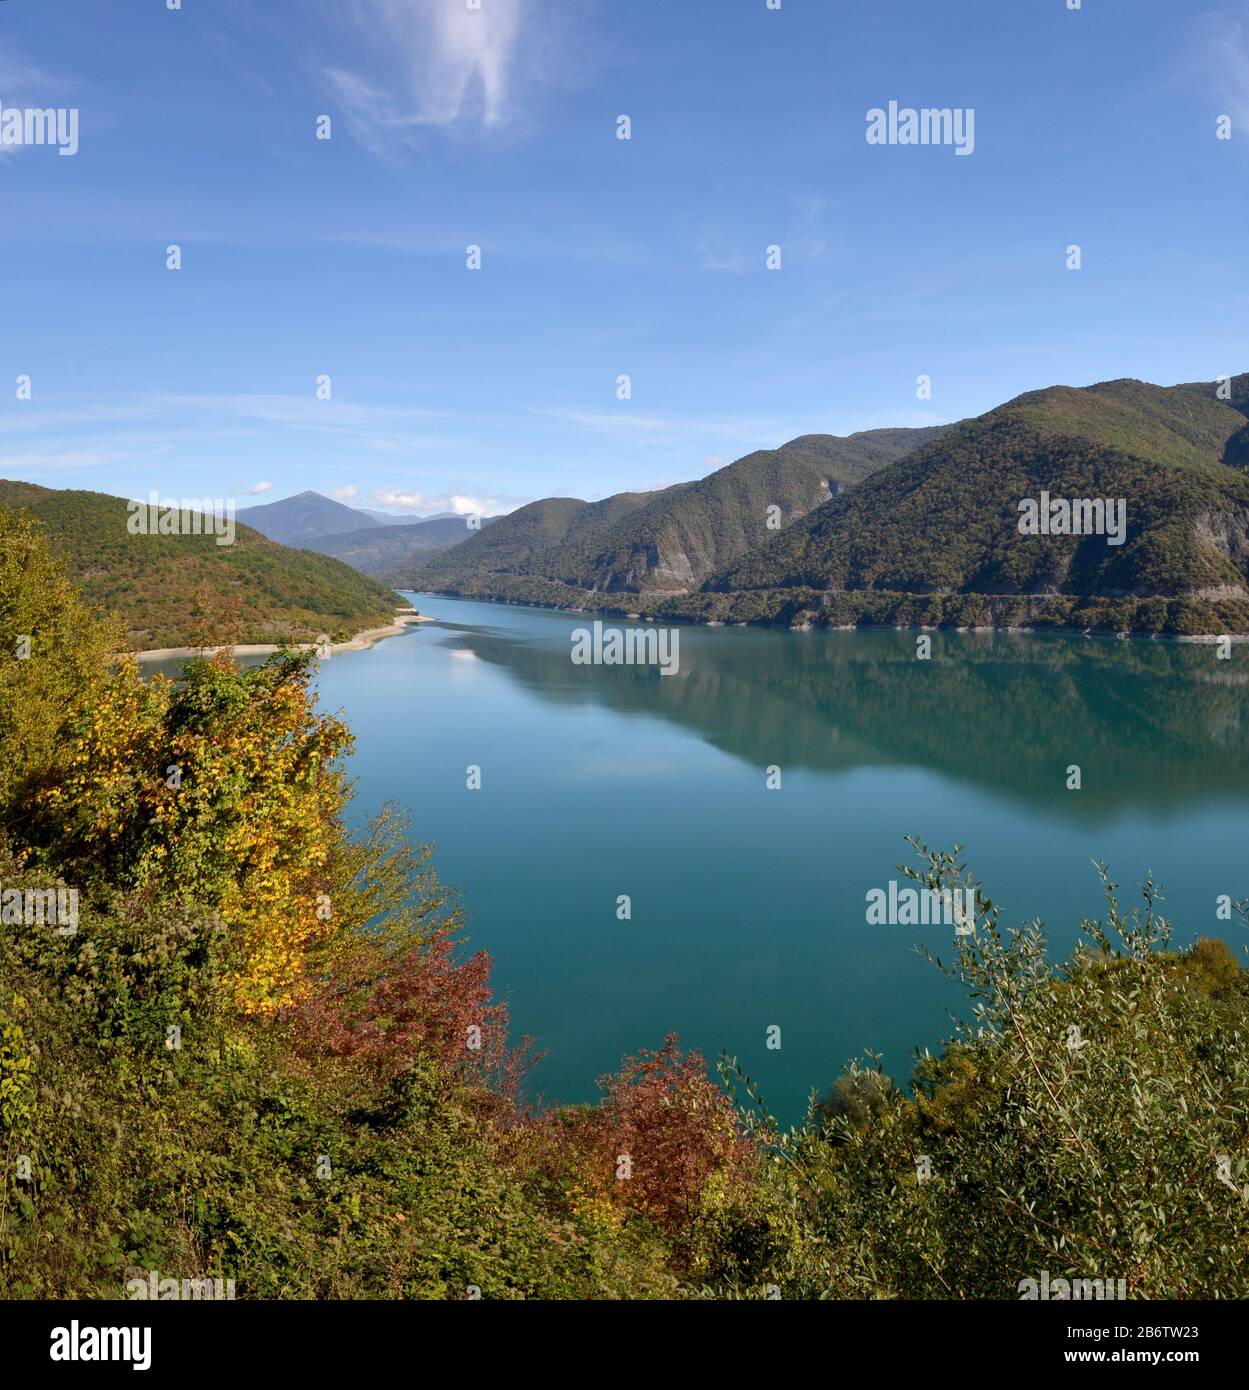 Der Azursee Ananuri ist umgeben von Herbstbäumen. Berge und Himmel spiegeln sich in ruhigem, glasig bewässertem Wasser wider. Stockfoto